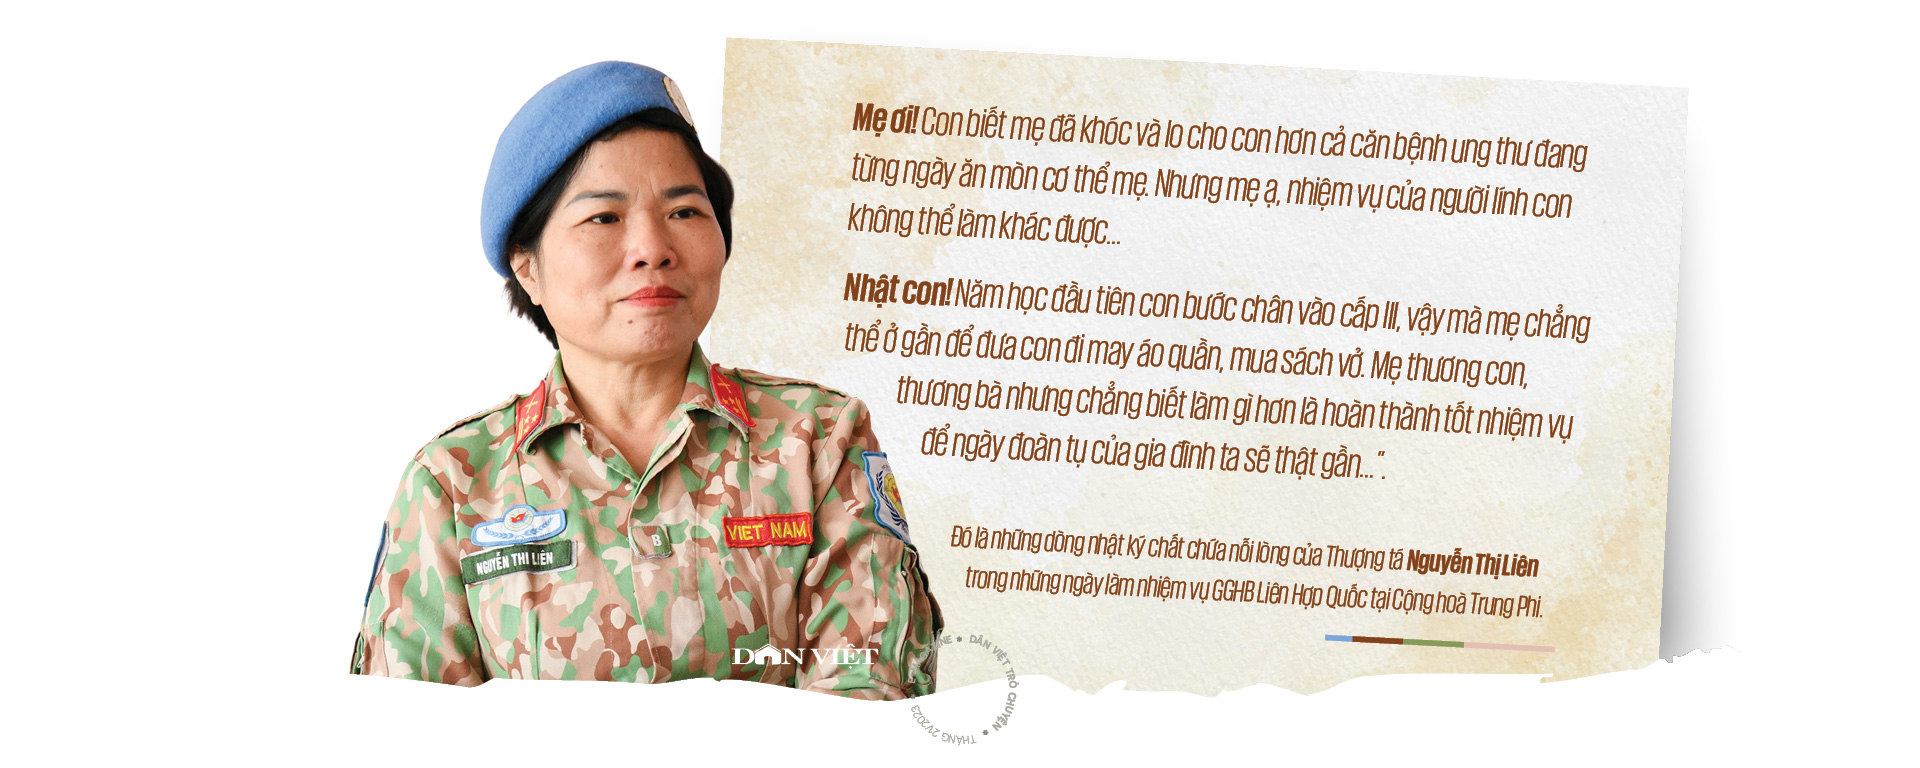 Nữ quân nhân 2 lần gìn giữ hoà bình Liên Hợp Quốc: "Mẹ ạ, nhiệm vụ của người lính con không thể làm khác được"- Ảnh 2.